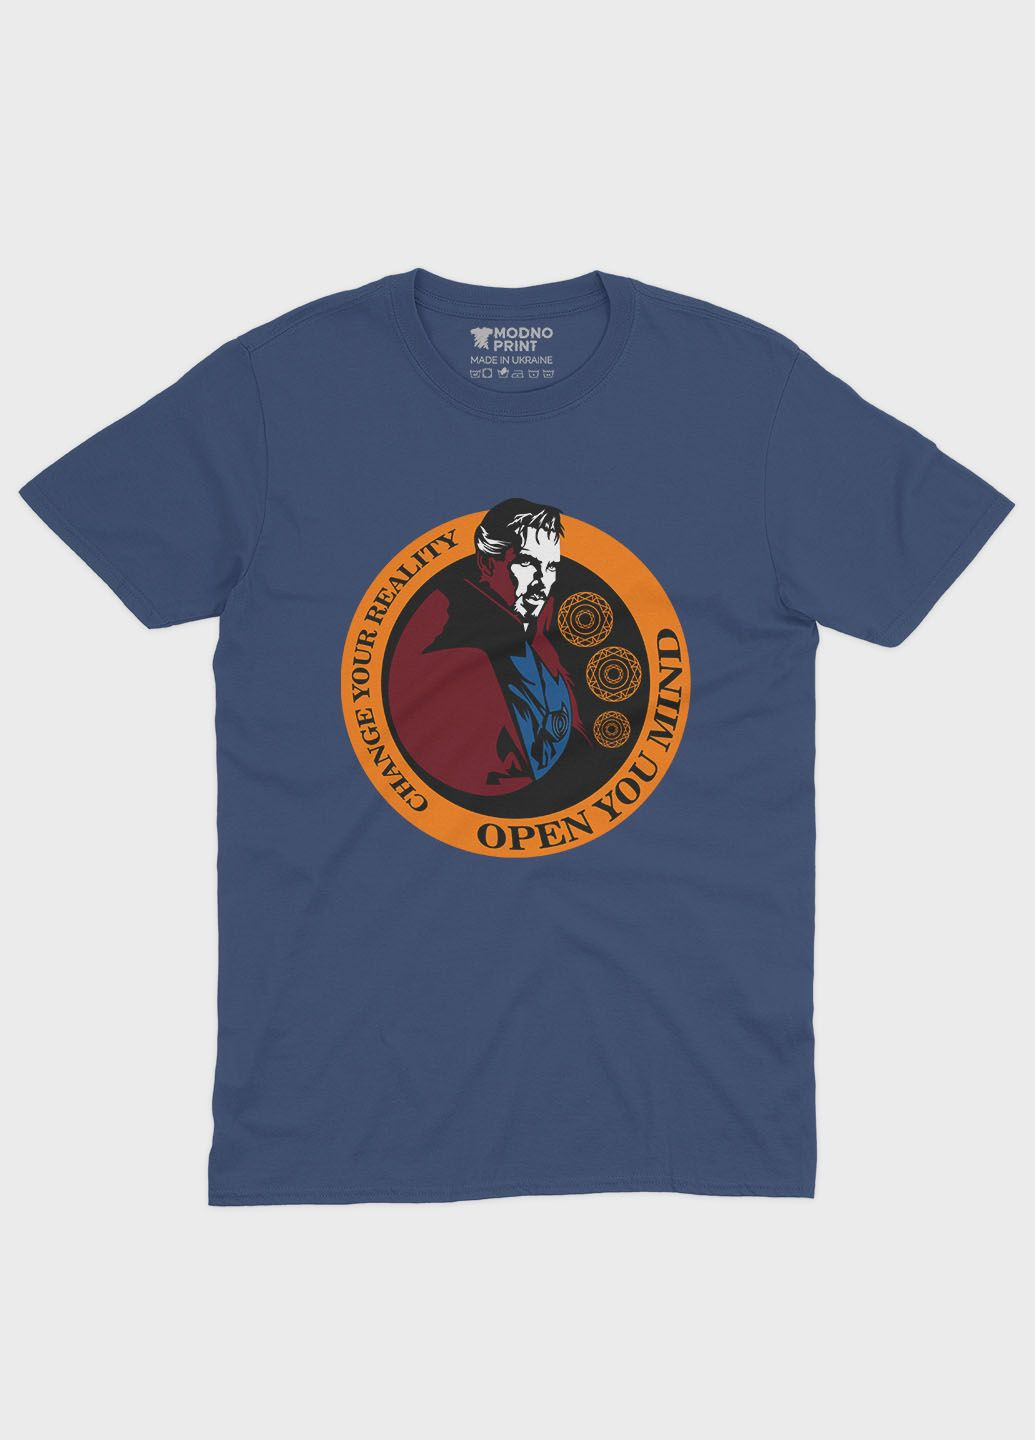 Темно-синяя демисезонная футболка для девочки с принтом супергероя - доктор стрэндж (ts001-1-nav-006-020-005-g) Modno